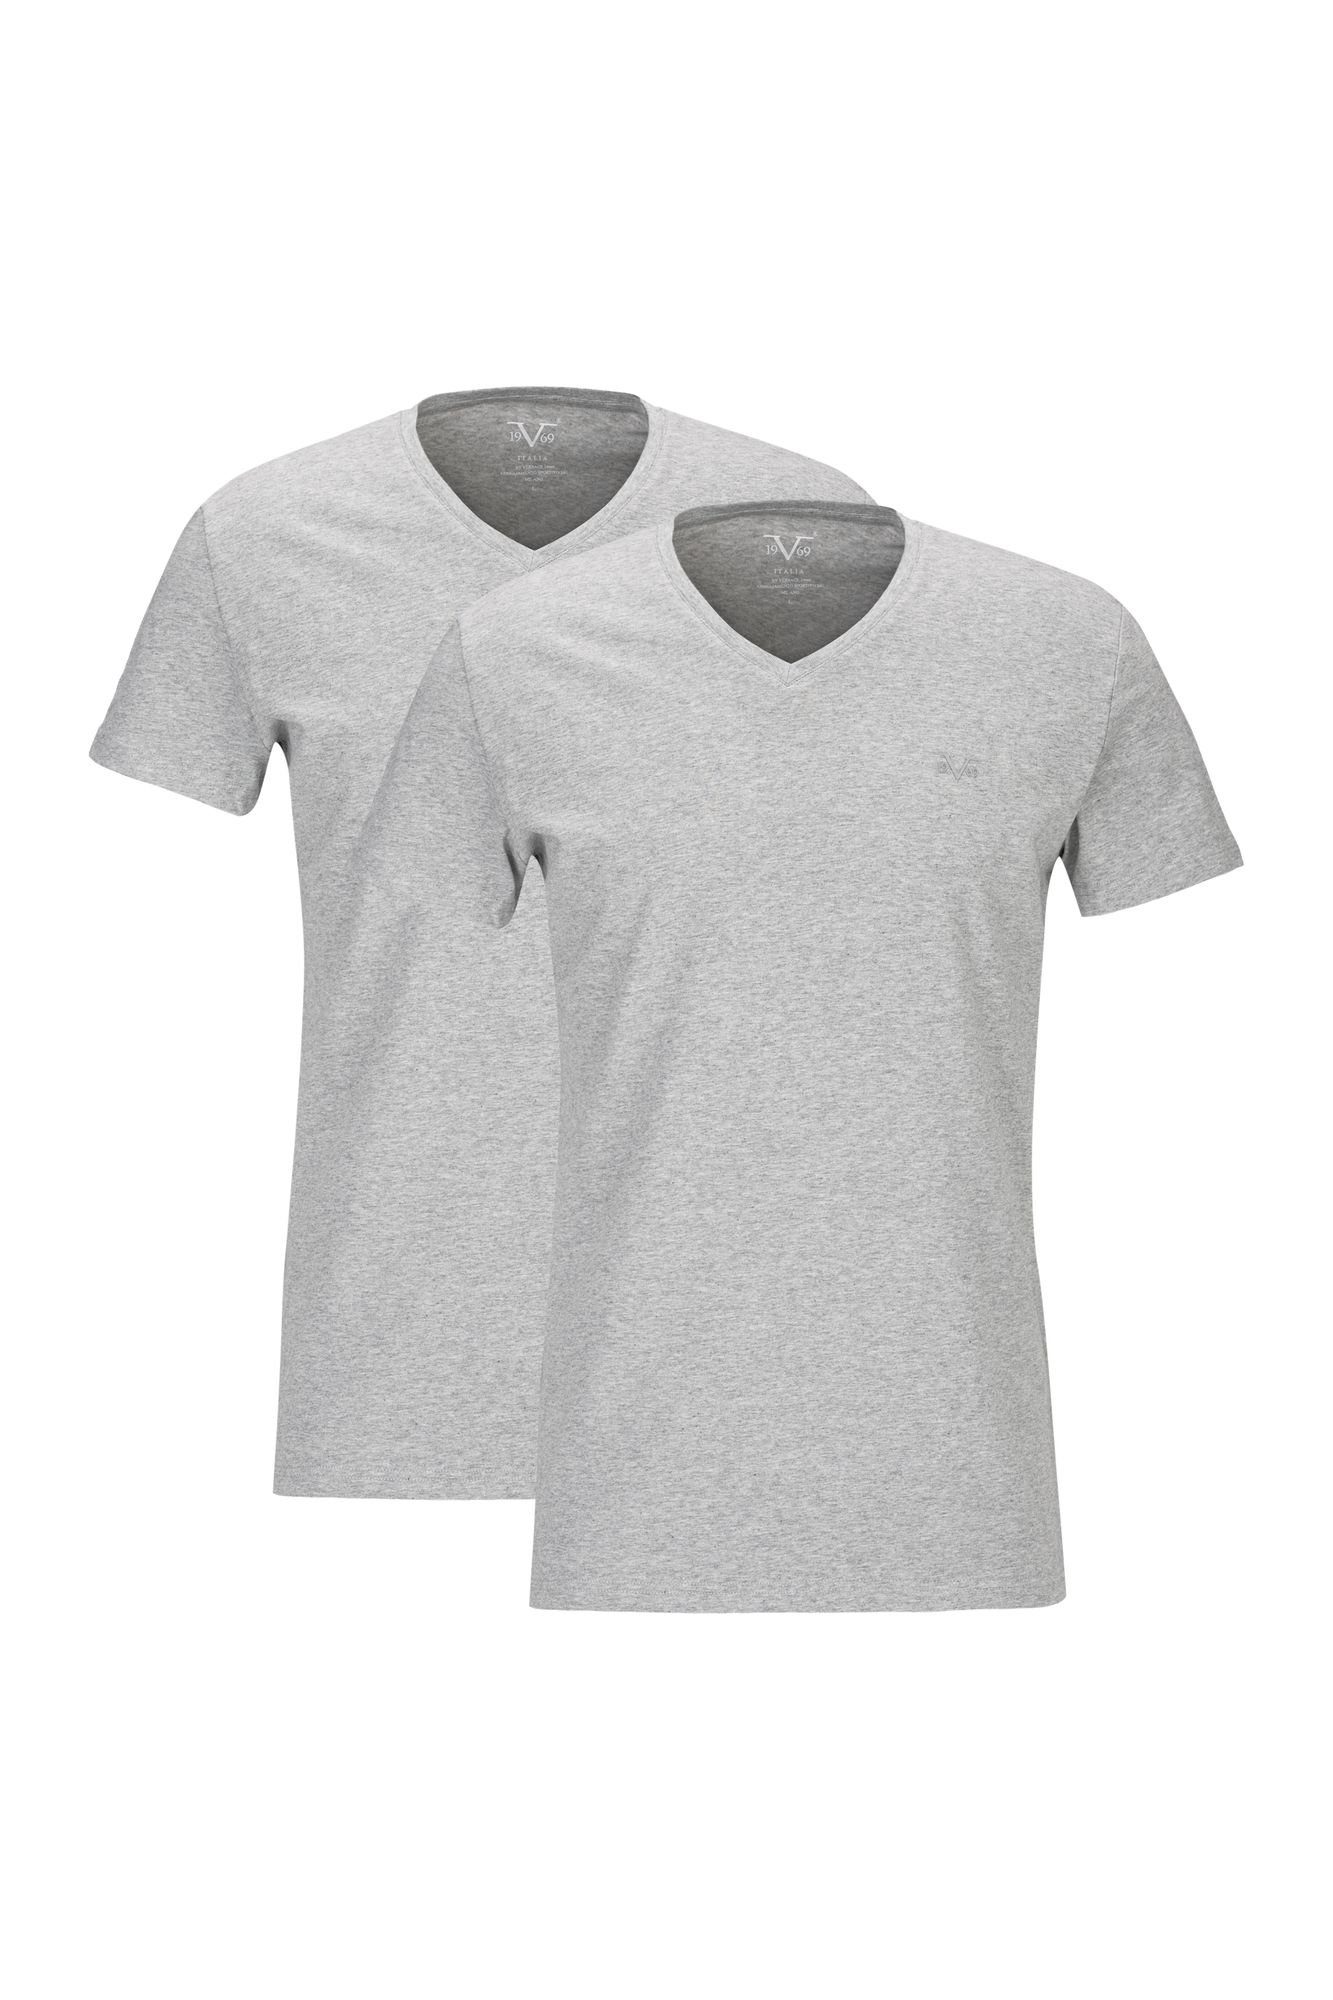 19V69 Italia by Versace T-Shirt Unterziehshirt Unterhemd mit Kurzarm V-Ausschnitt für Herren mit einem kleinem Ton-in-Ton Logo auf der Brust grau